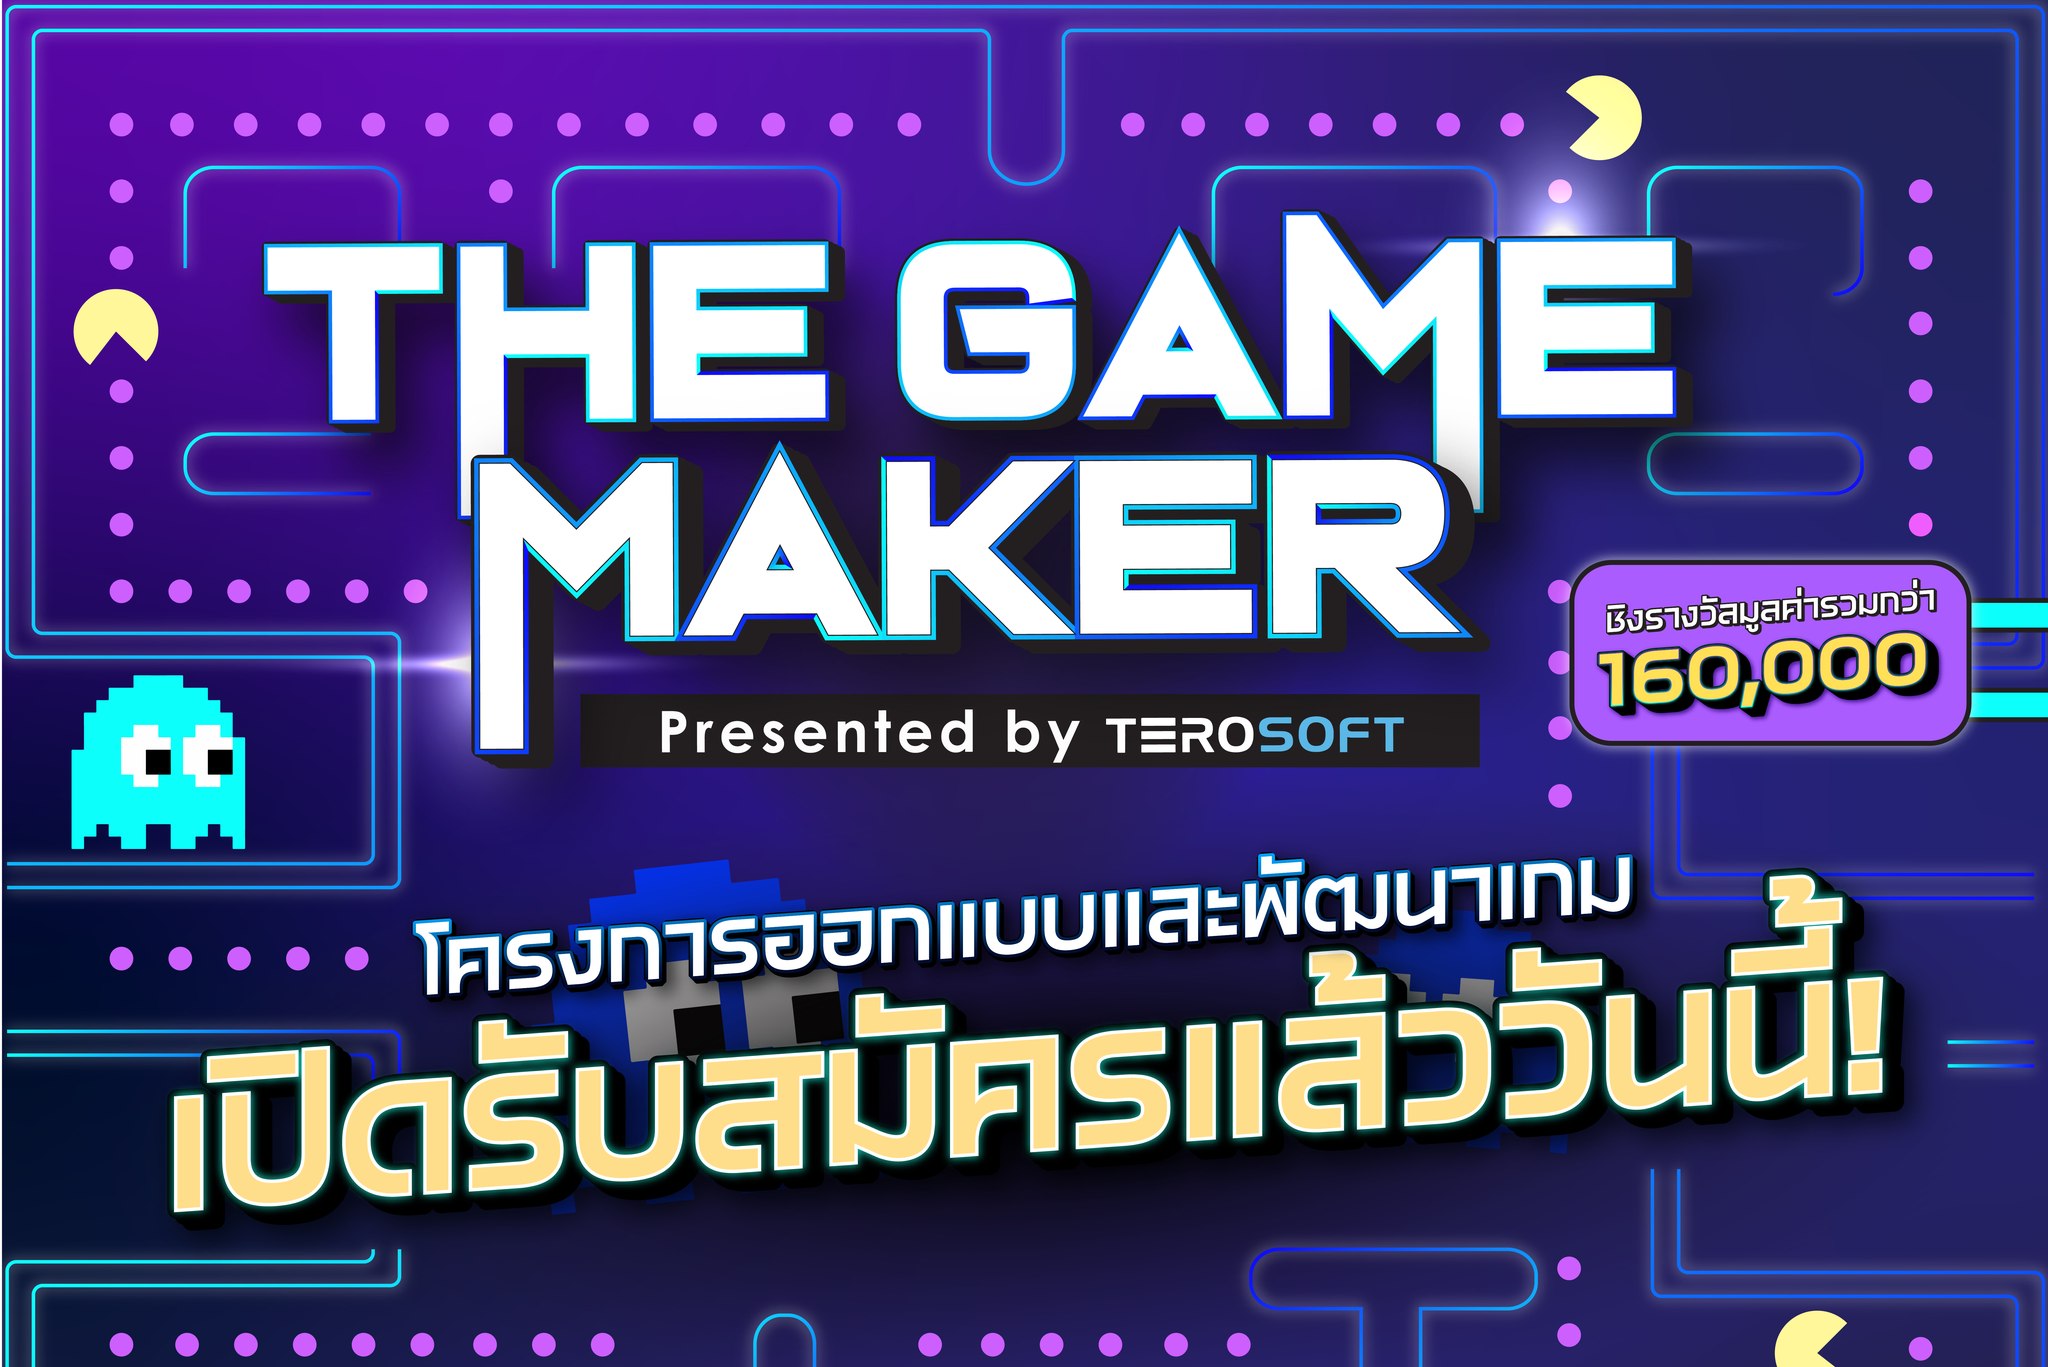 The Game Maker รับสมัครนักพัฒนาเกมหน้าใหม่  โชว์ผลงาน สานฝันให้เป็นจริง ชิงรางวัลรวม 160,000 บาท